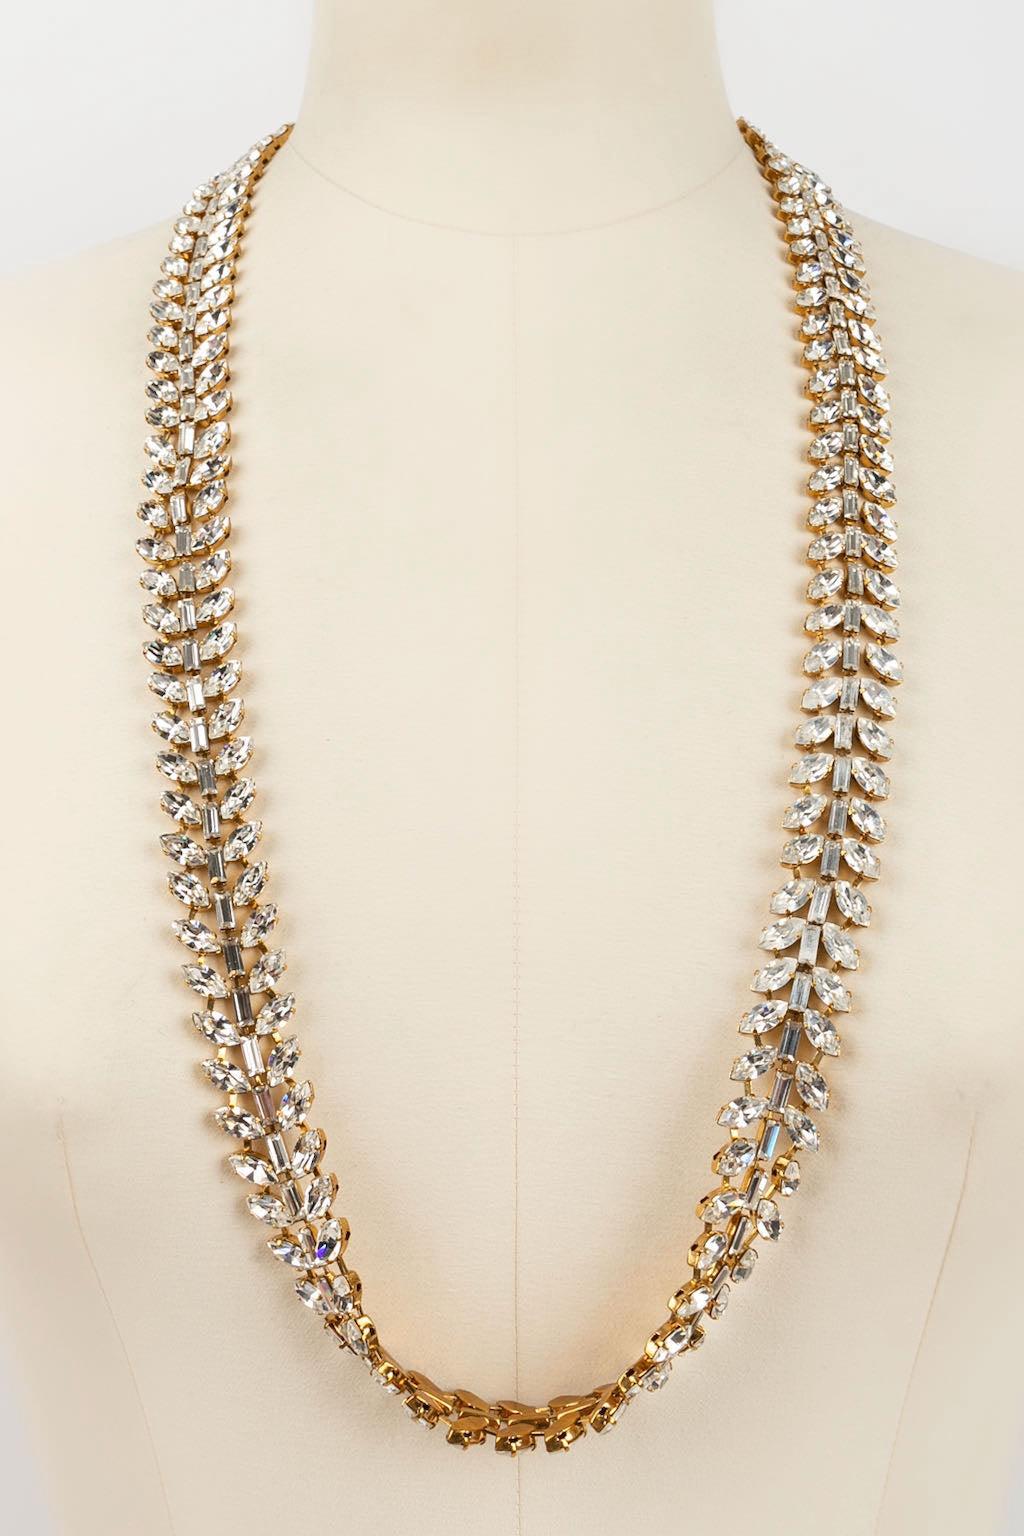 Yves Saint Laurent Golden Metal Necklace In Excellent Condition For Sale In SAINT-OUEN-SUR-SEINE, FR